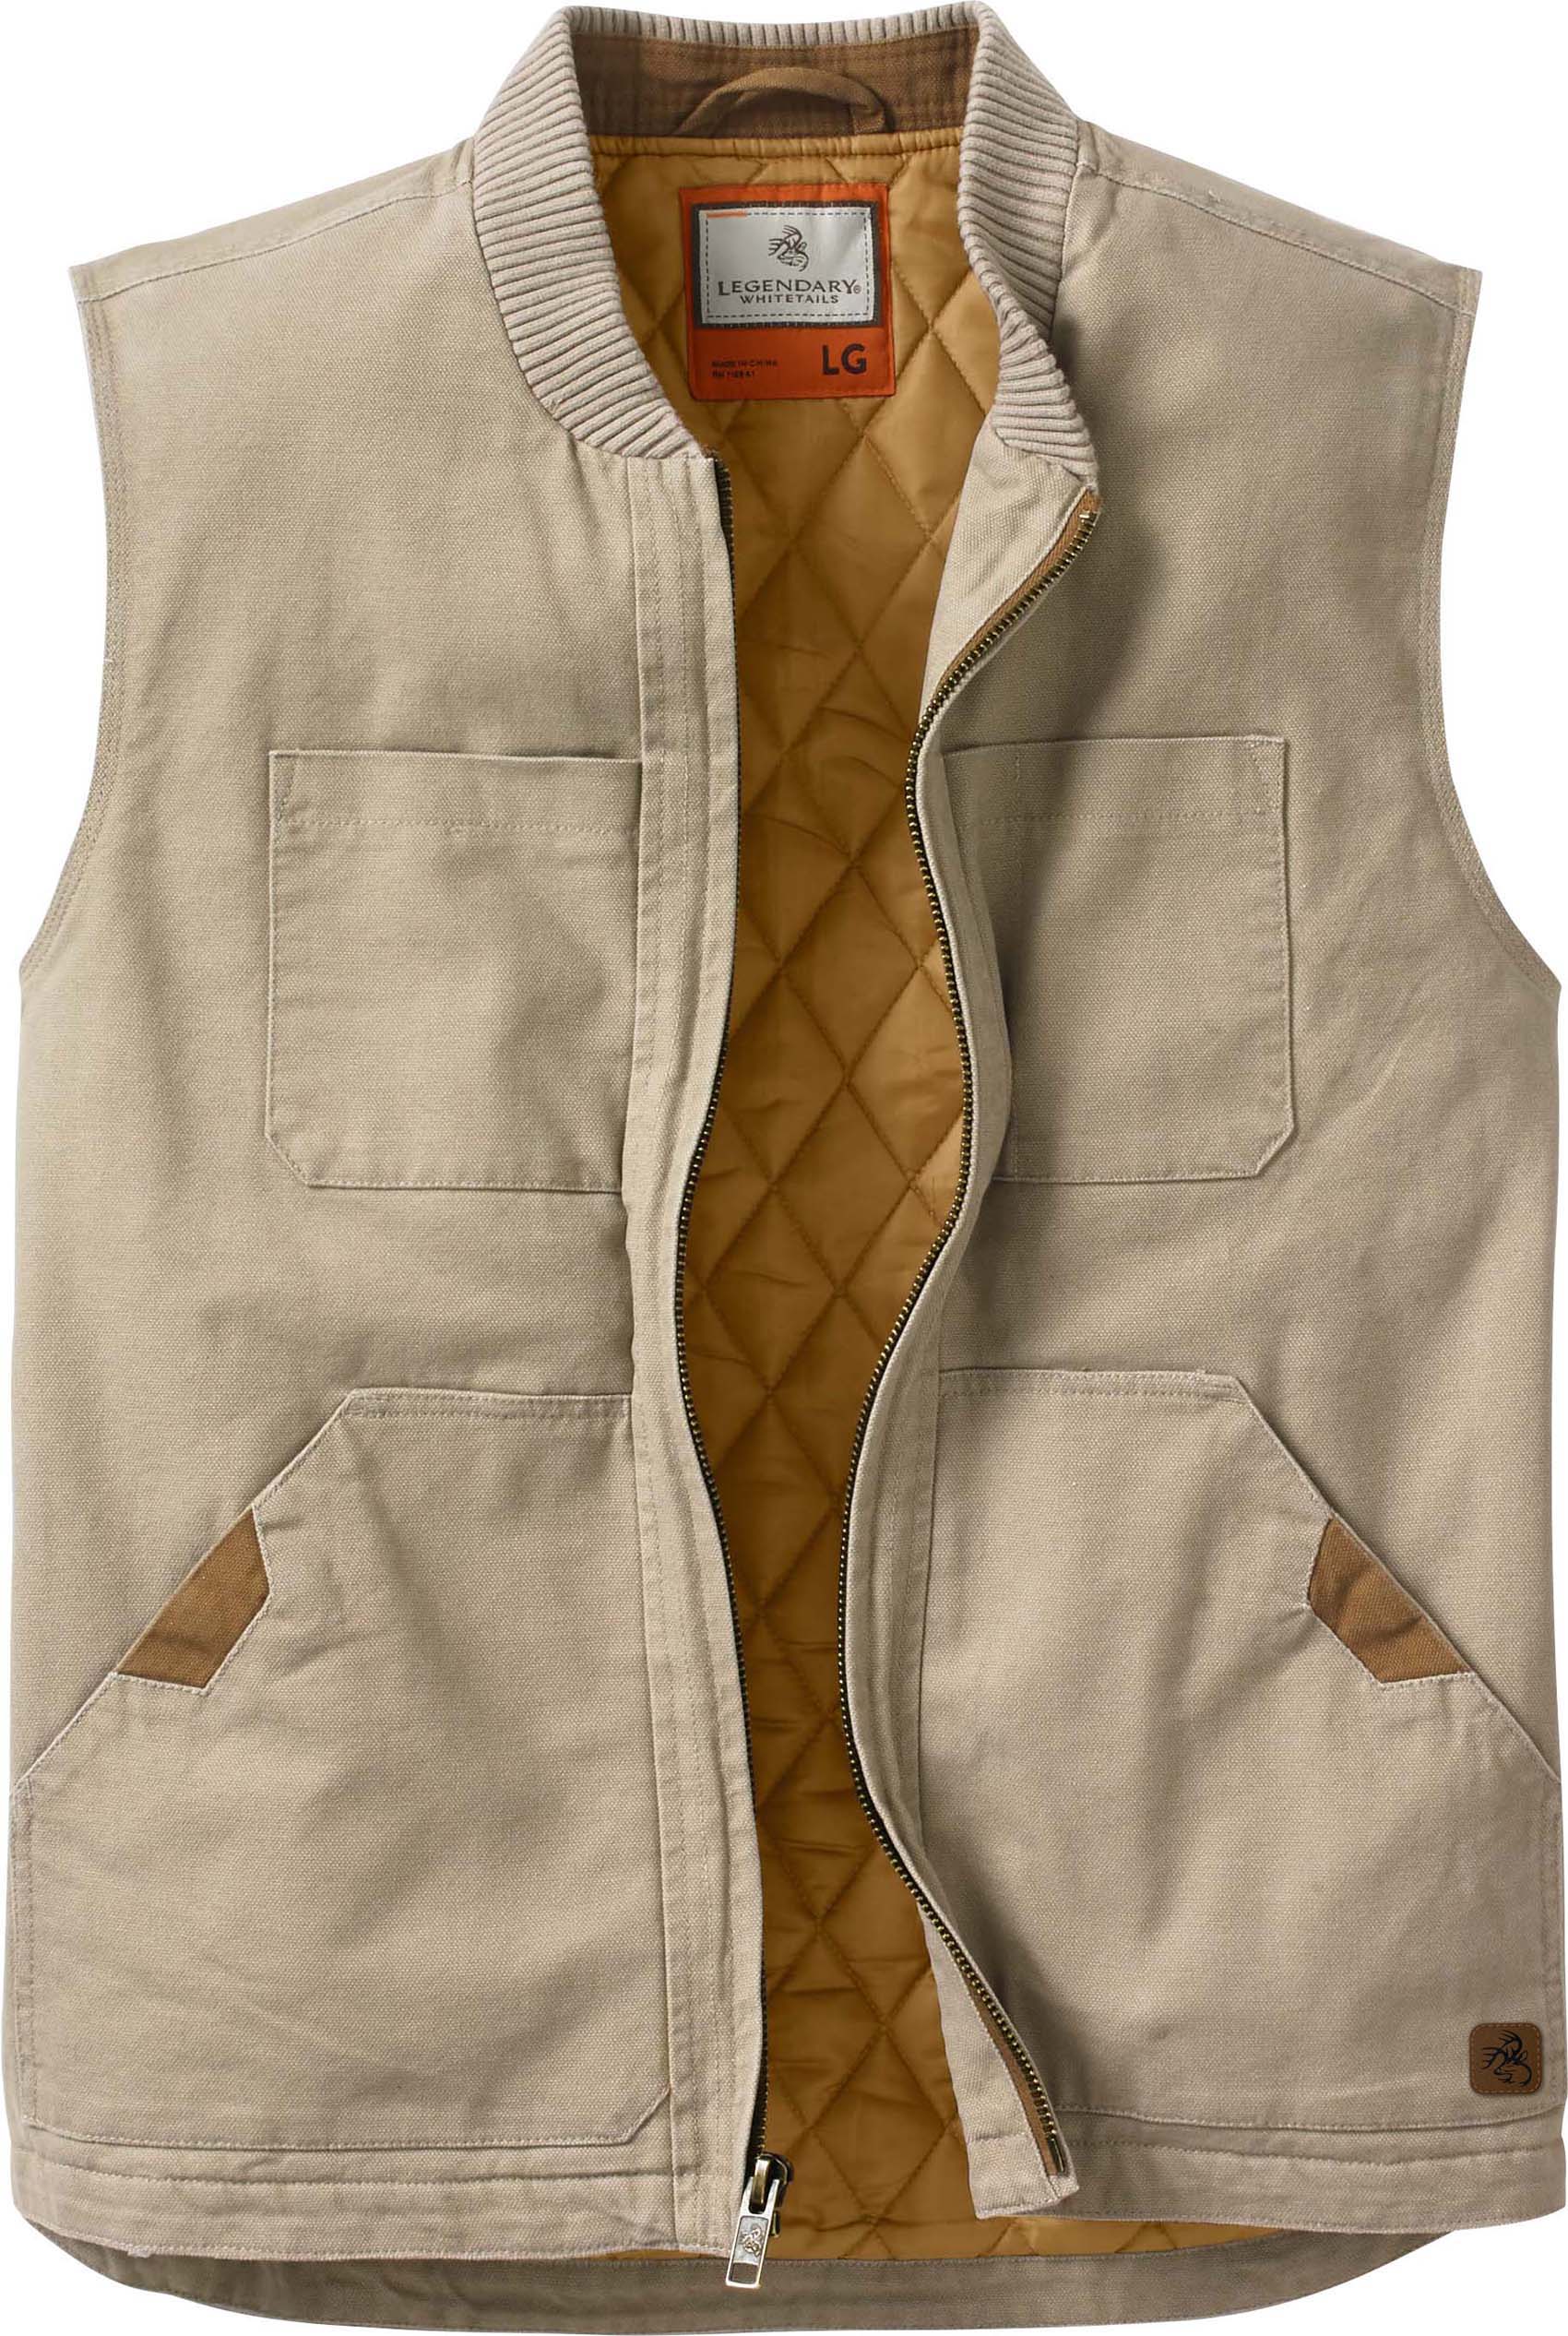 Men's Canvas Cross Trail Vest | Legendary Whitetails